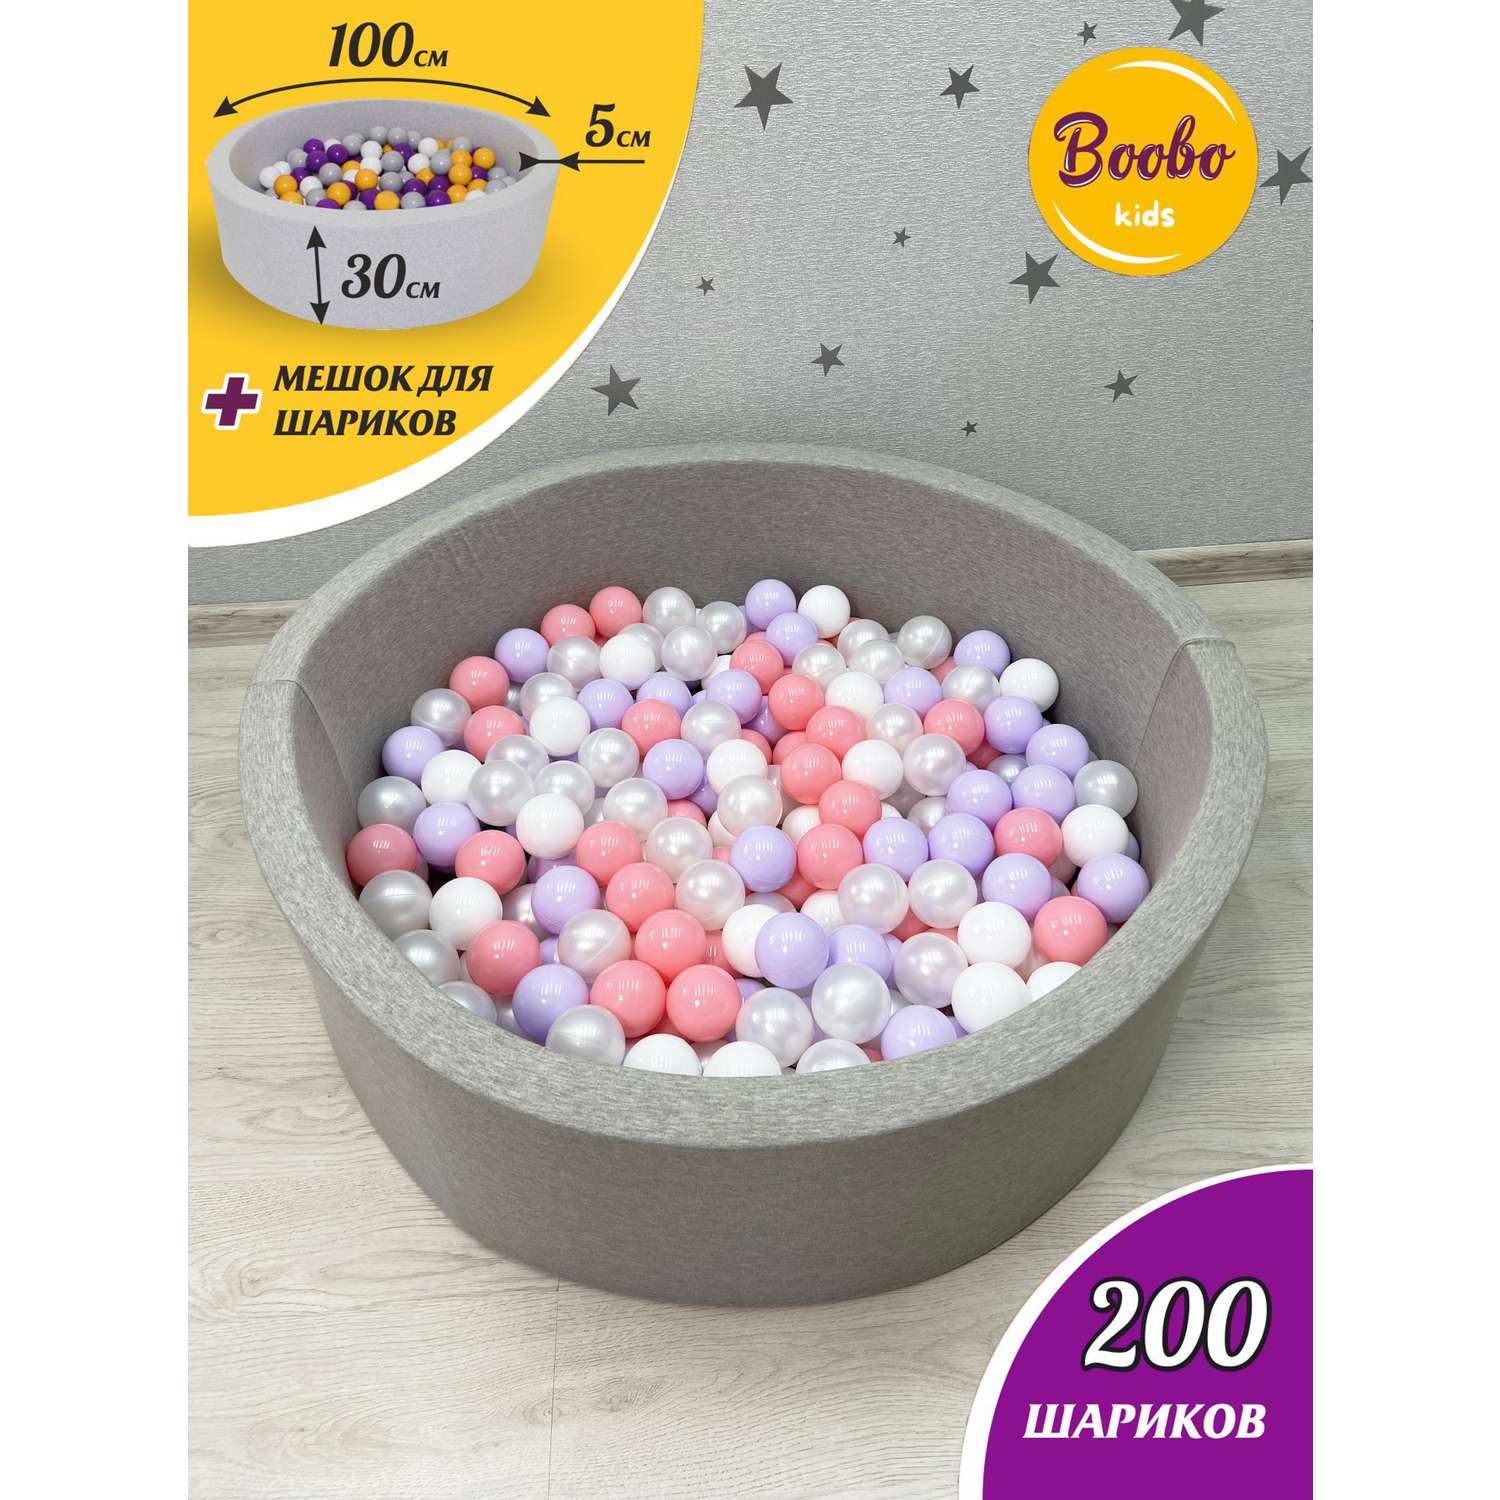 Сухой бассейн Boobo.kids 100х30 см 200 шаров серый+розовый - фото 1